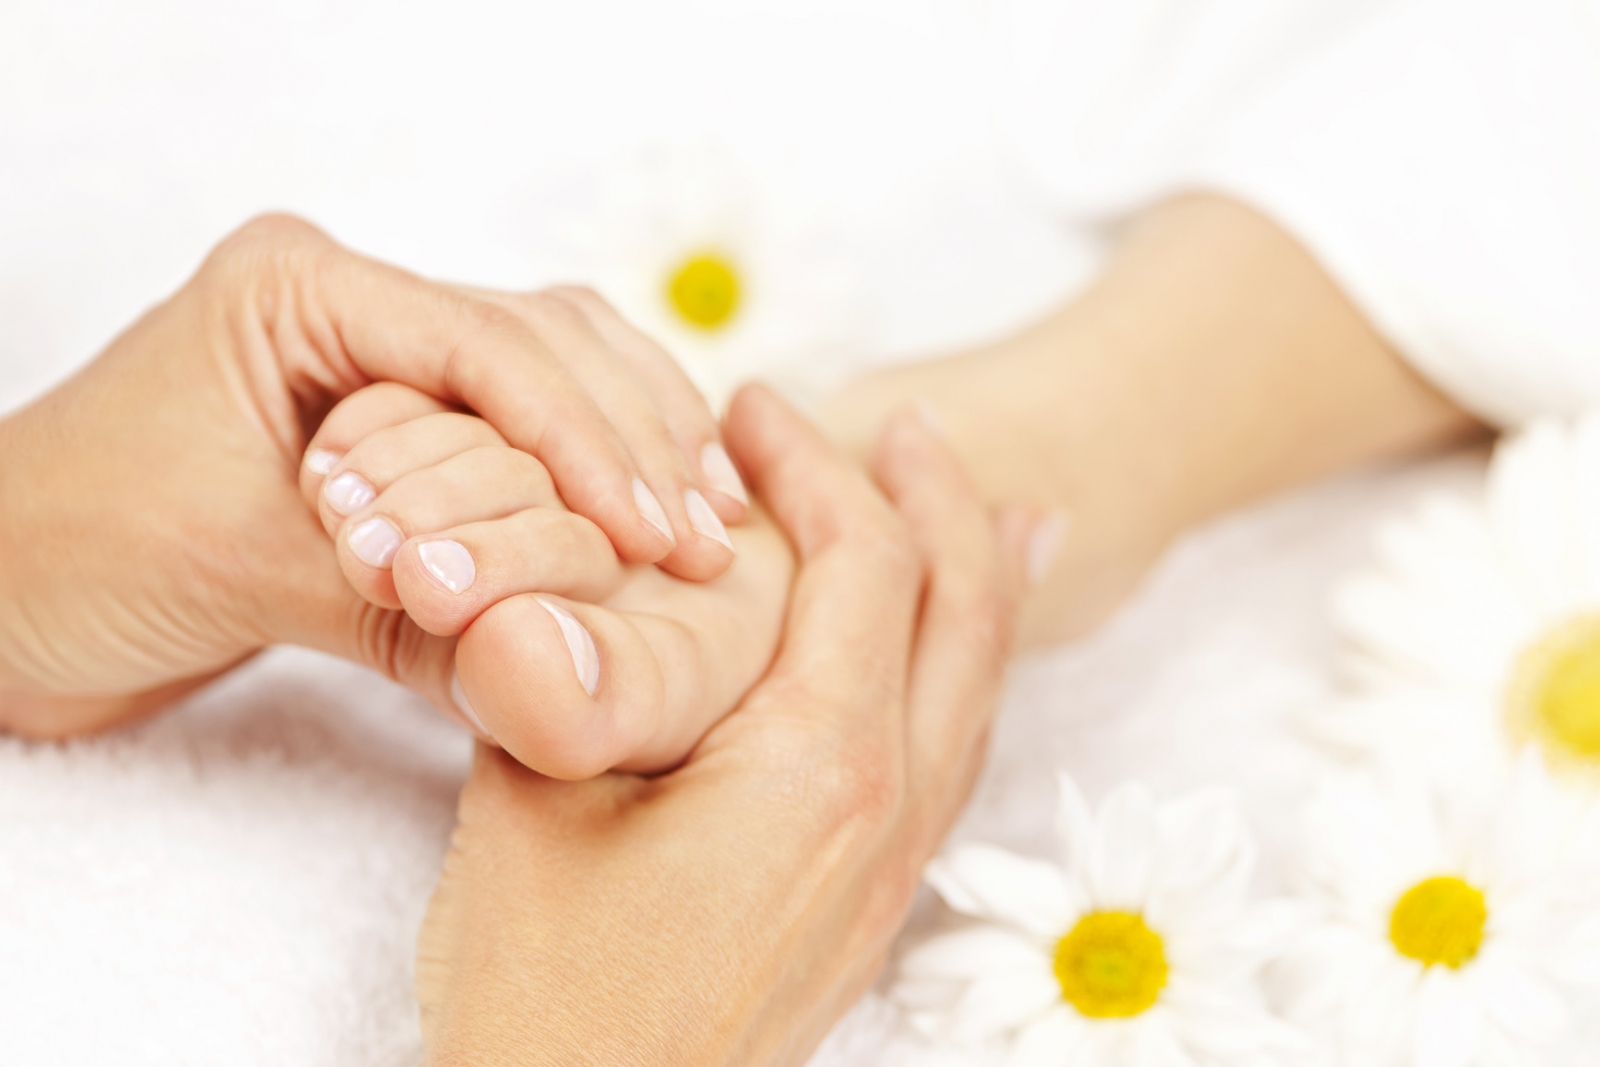 Việc xoa bóp chân thường xuyên không chỉ có tác dụng kích thích các huyệt đạo mà còn giúp cải thiện quá trình tuần hoàn máu của chân